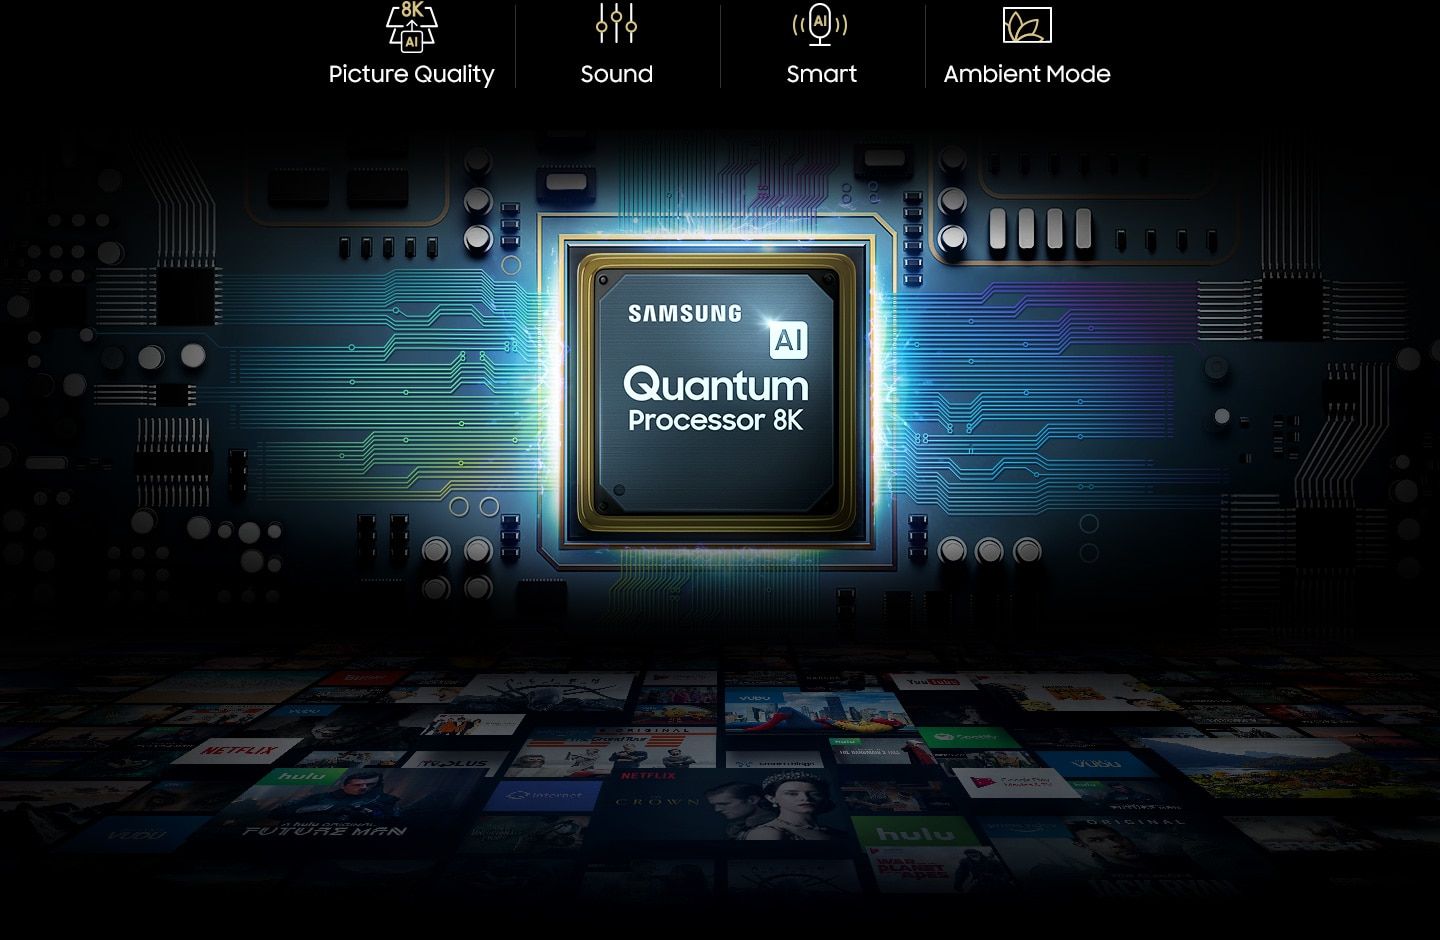 Le processeur AI Quantum des téléviseurs 8K de Samsung.